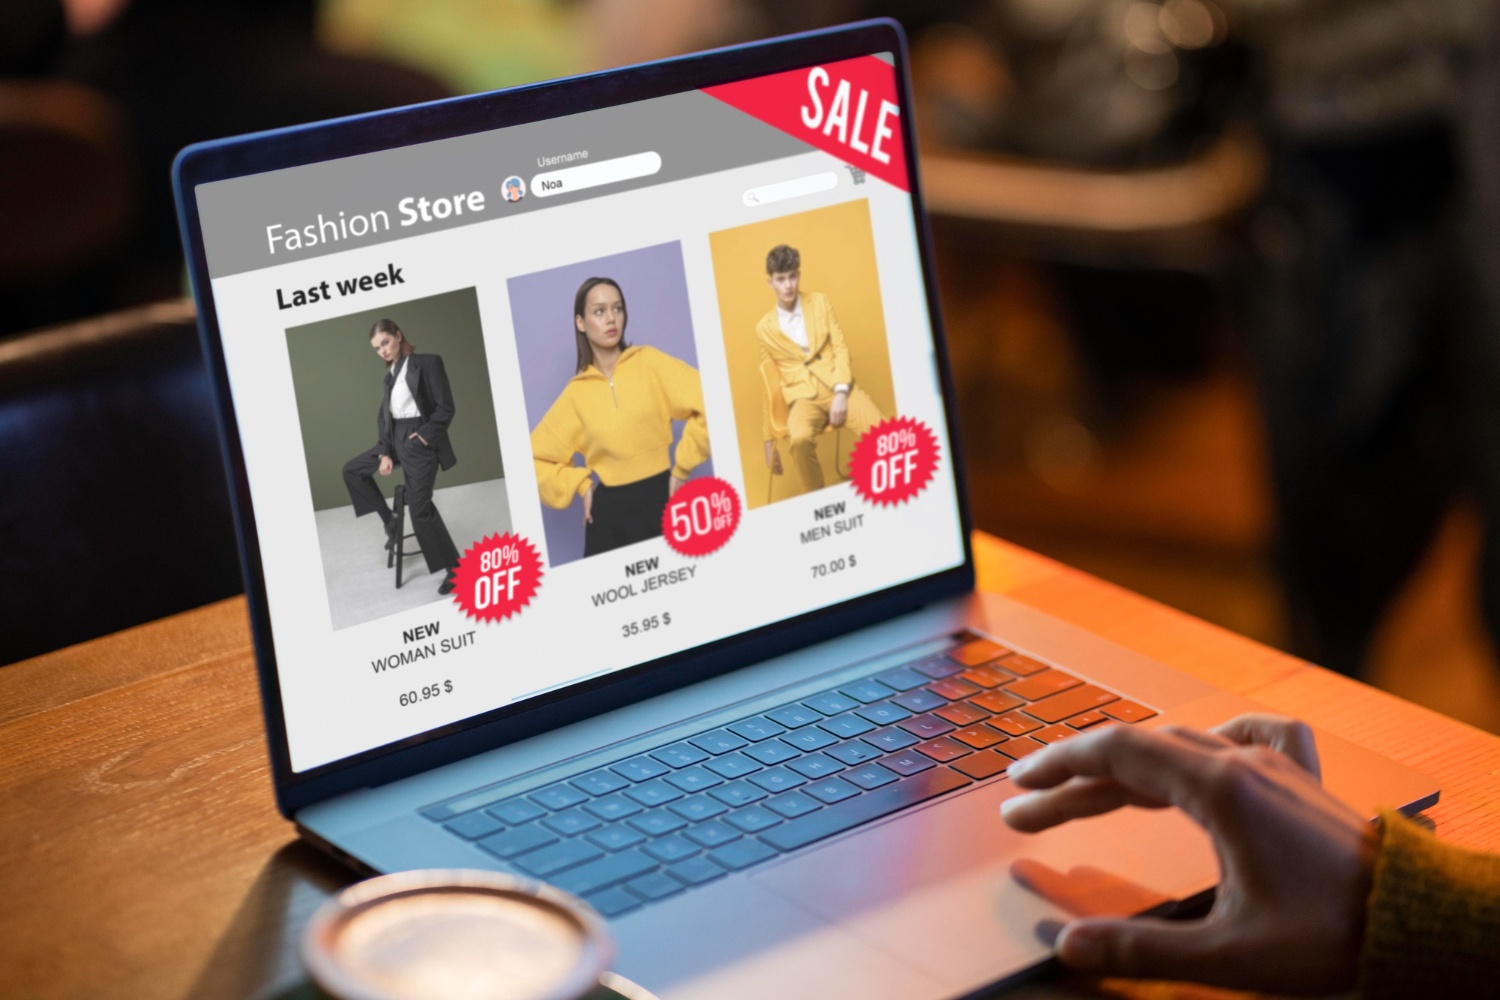 Promosi fashion di laptop